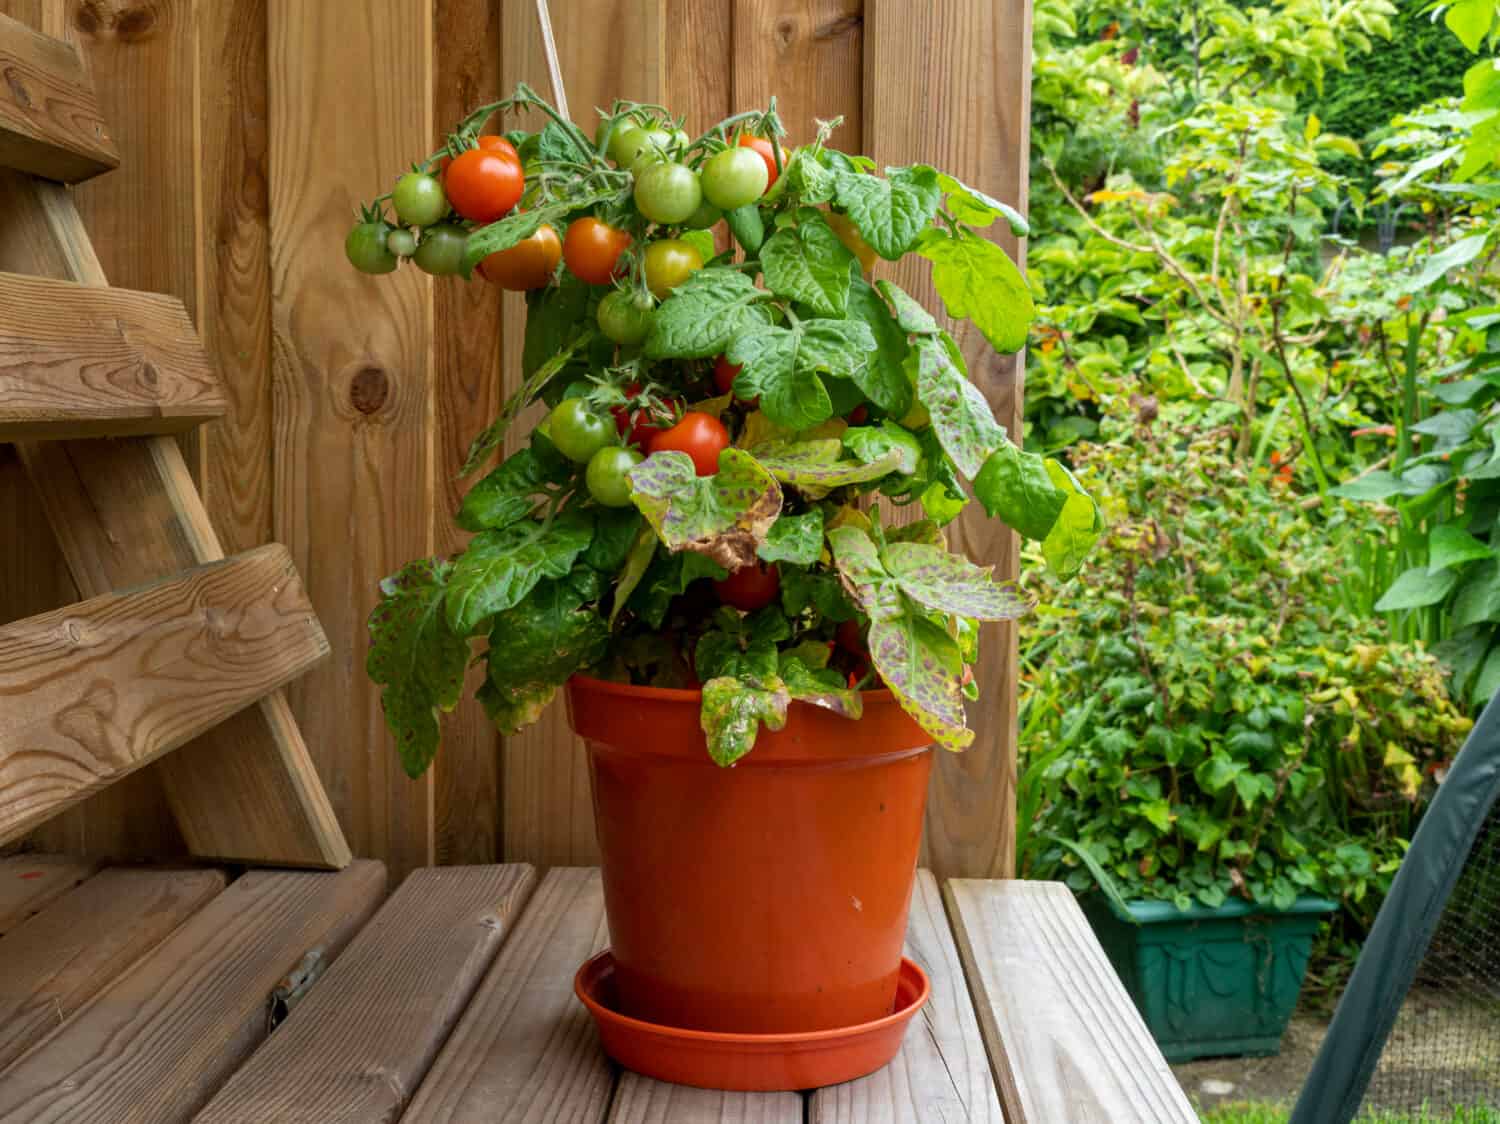 Pianta di pomodoro nano in vaso con pomodori maturi e acerbi, varietà Red Robin